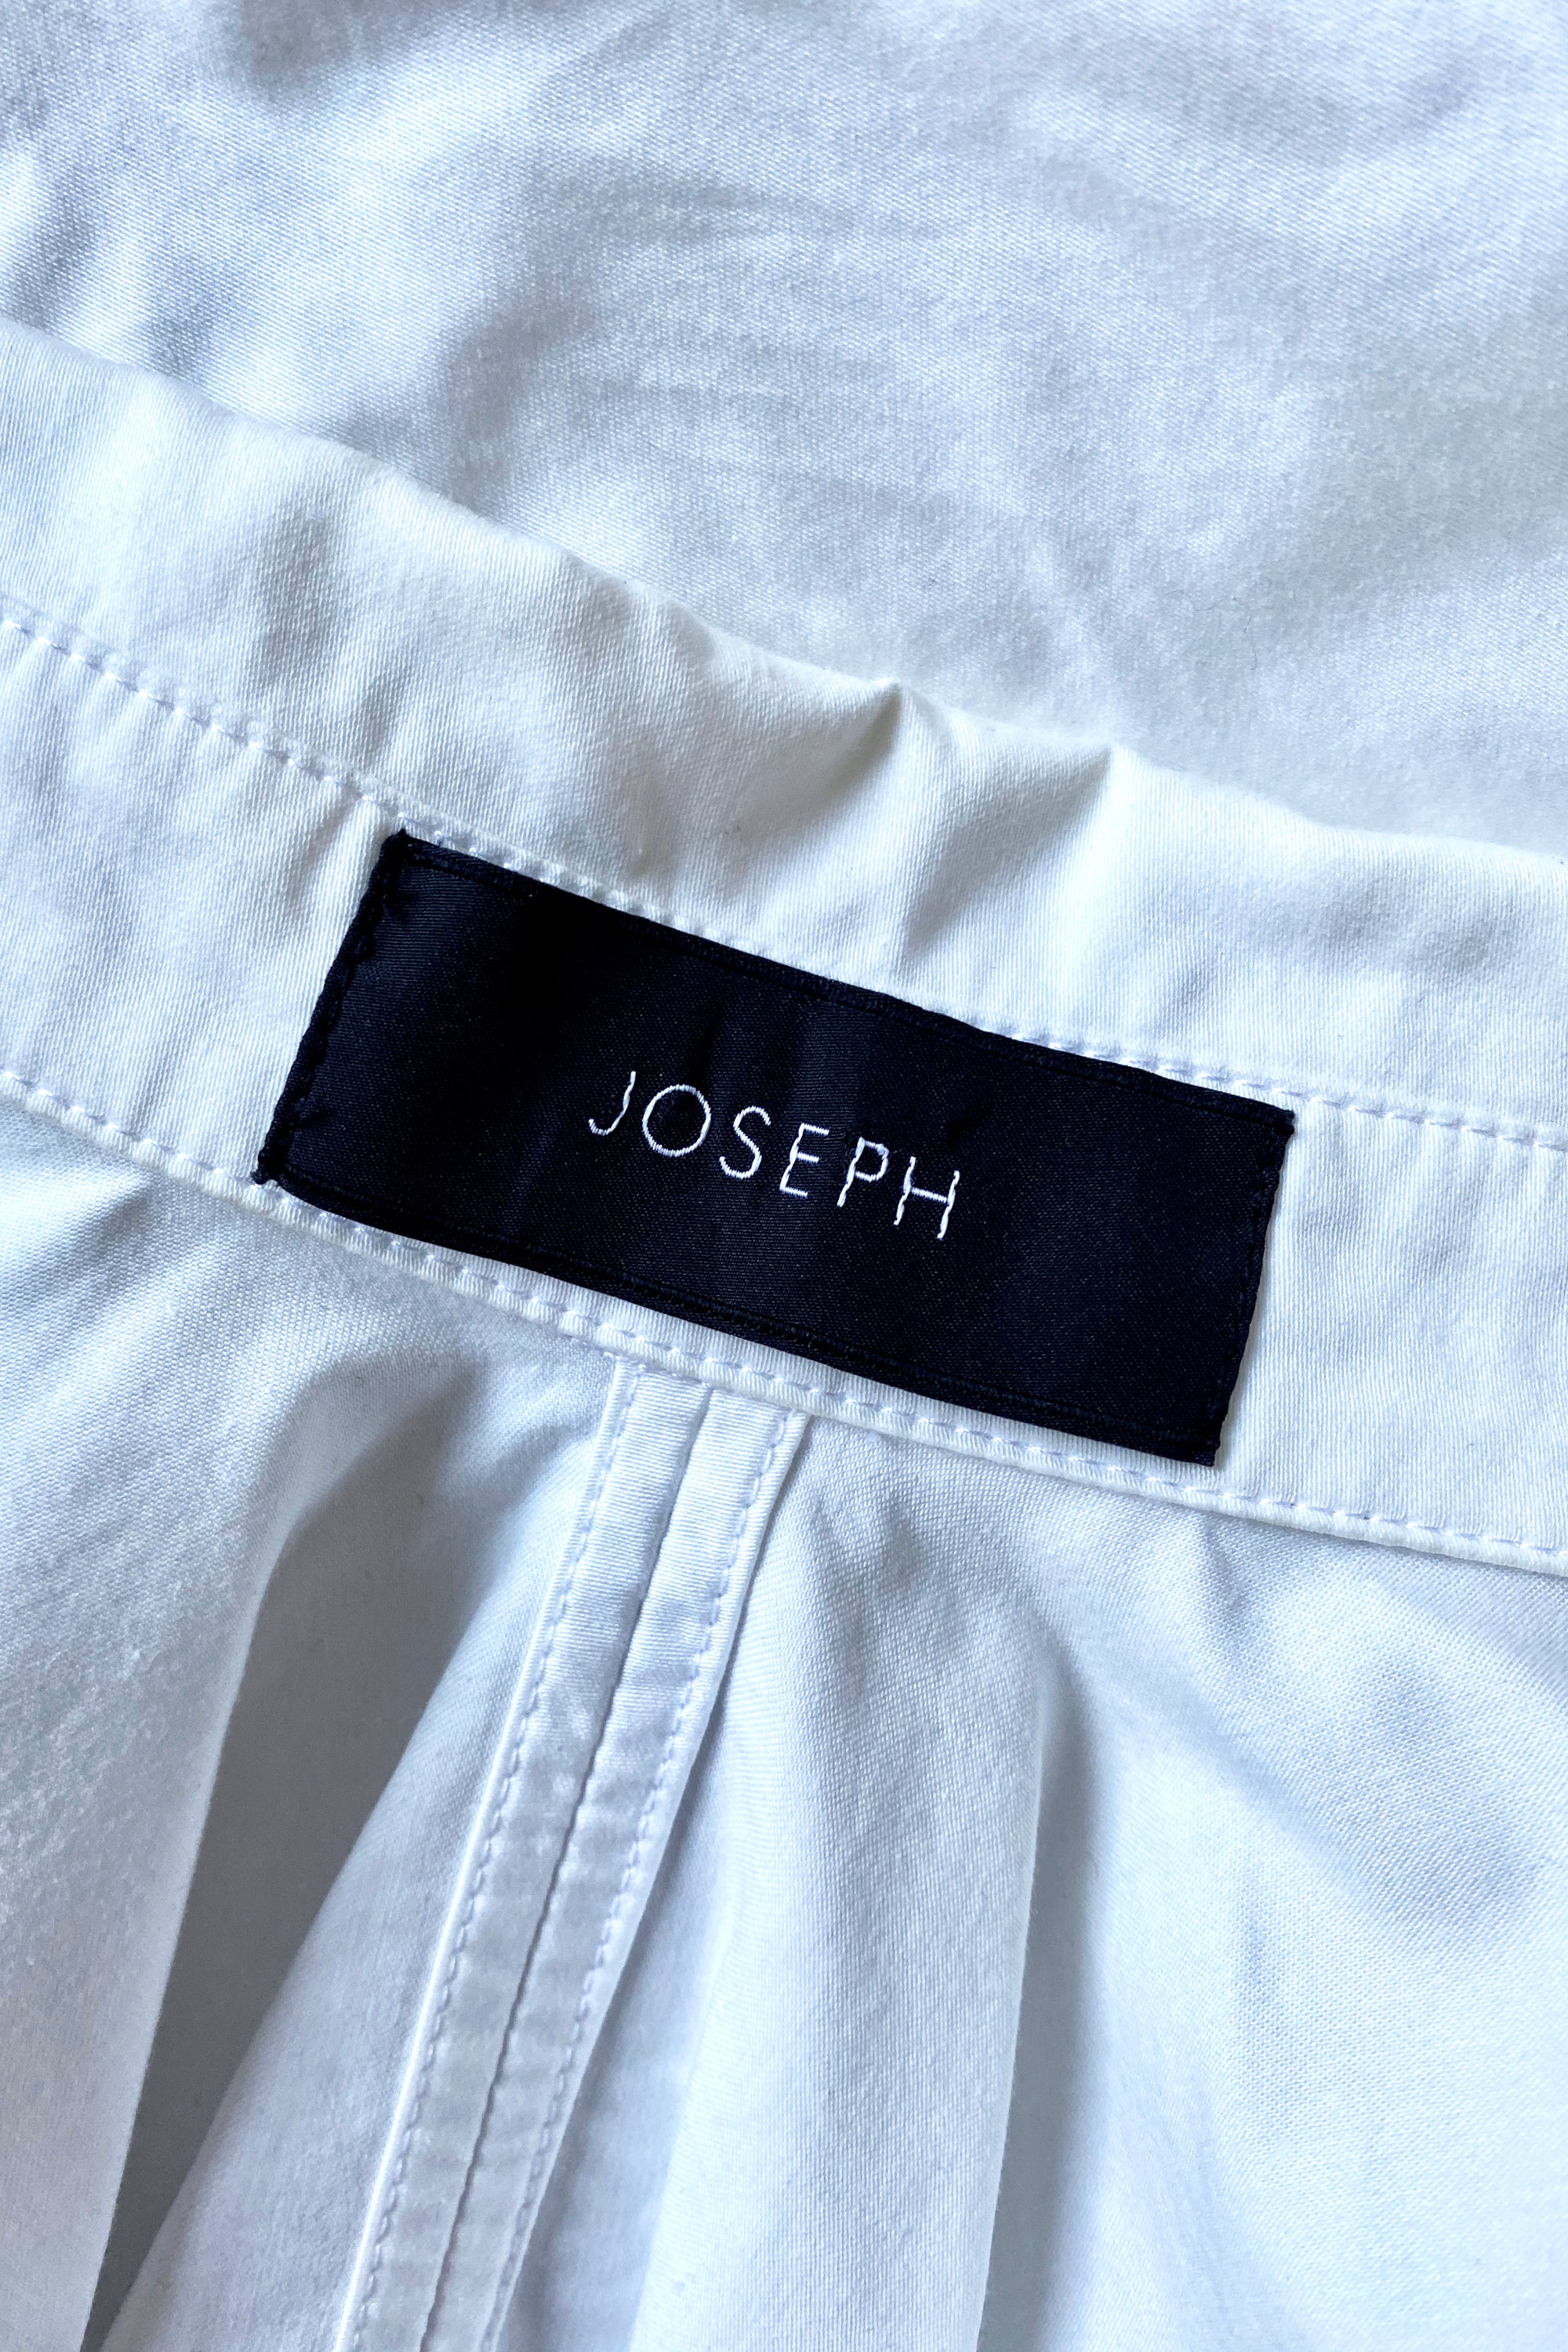 Joseph Open Back Statement White Shirt Size 8-12